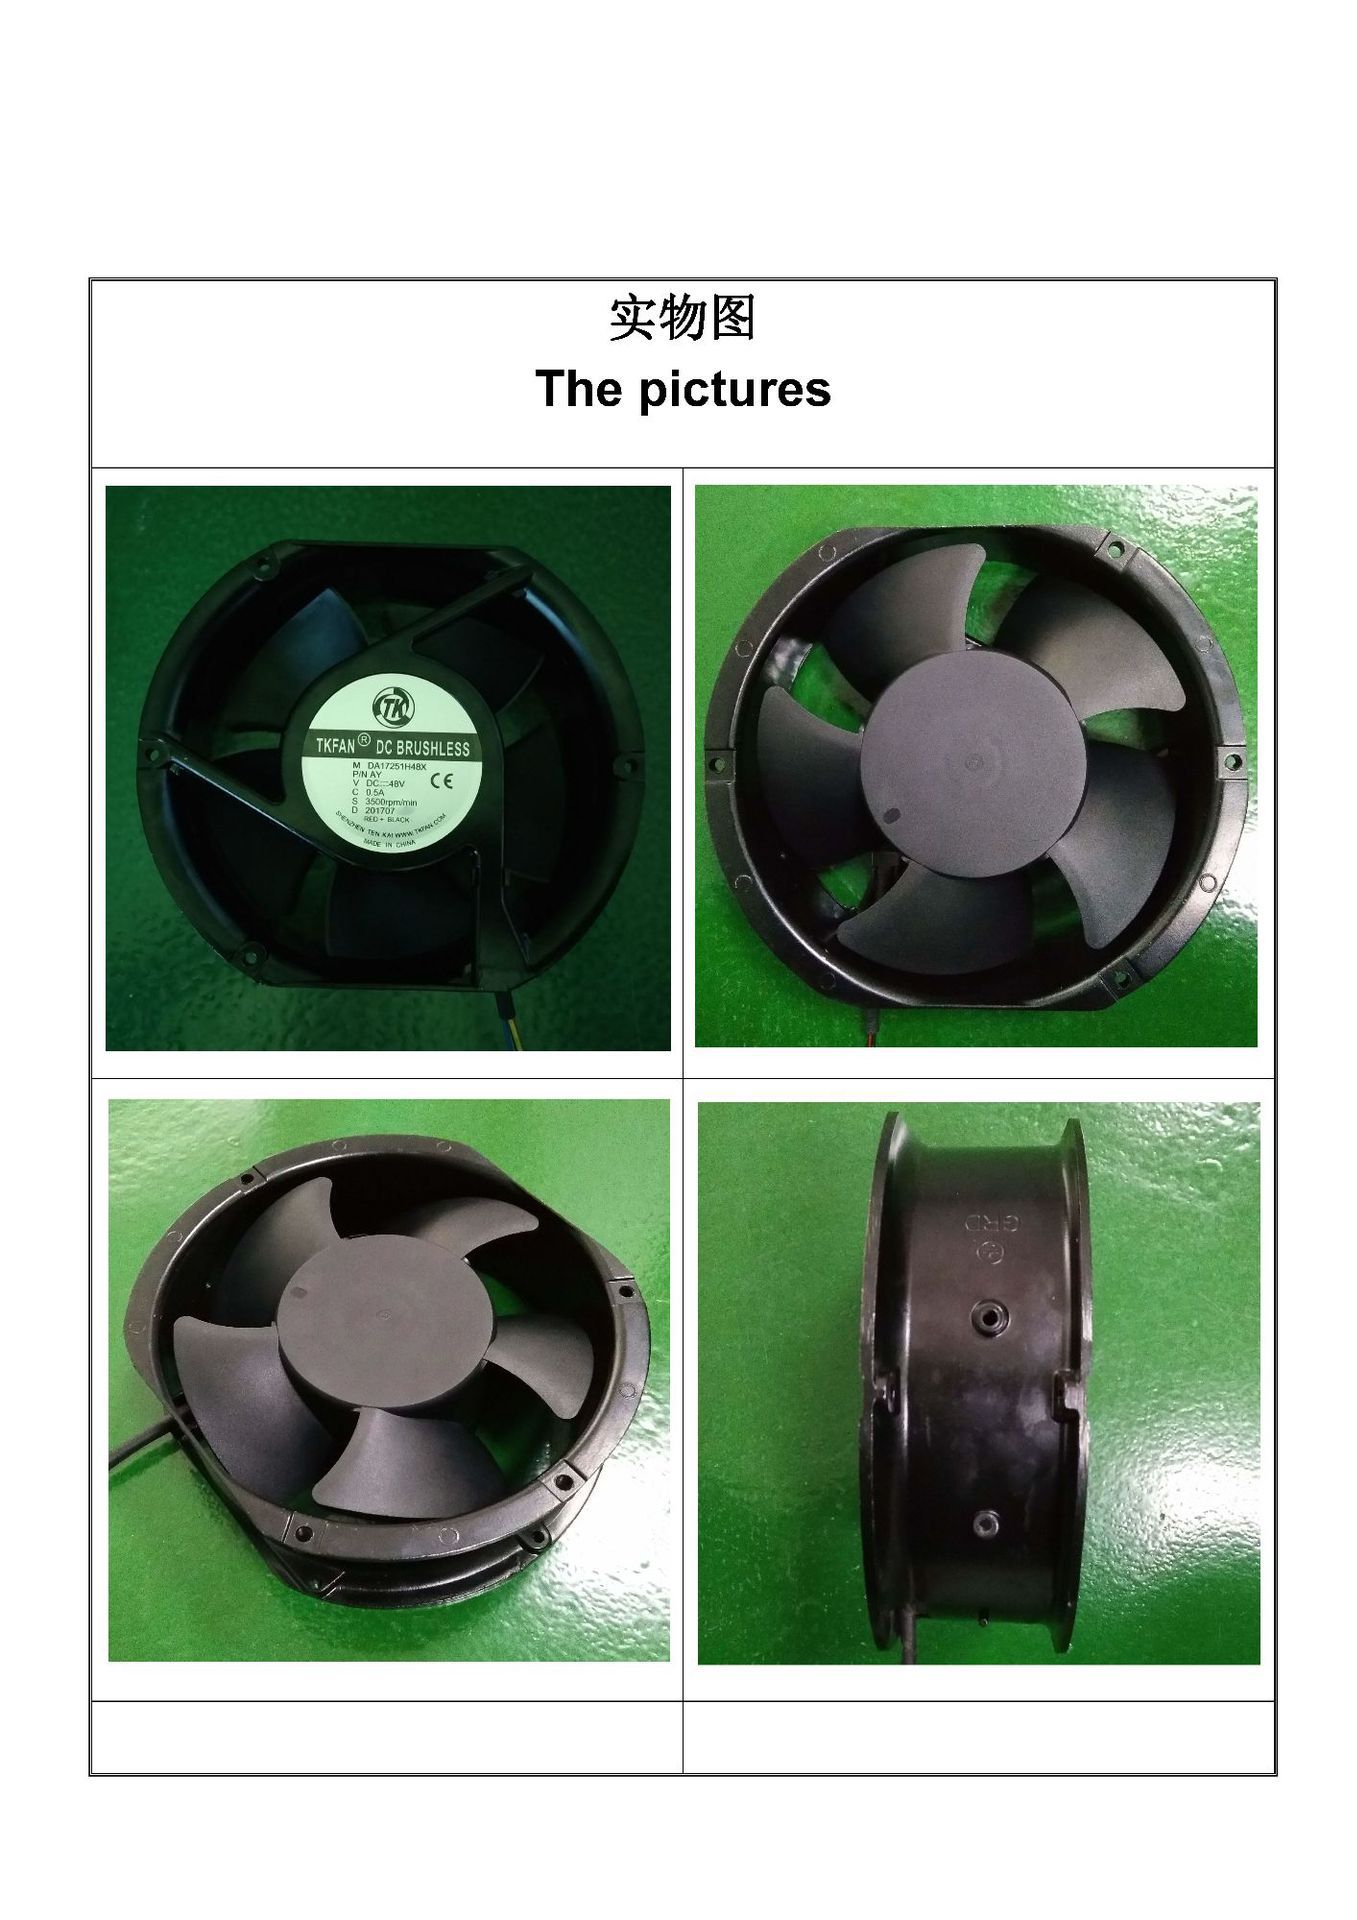 深圳腾凯专业生产 车载空气净化器 三叶 17251直流散热风扇 24V